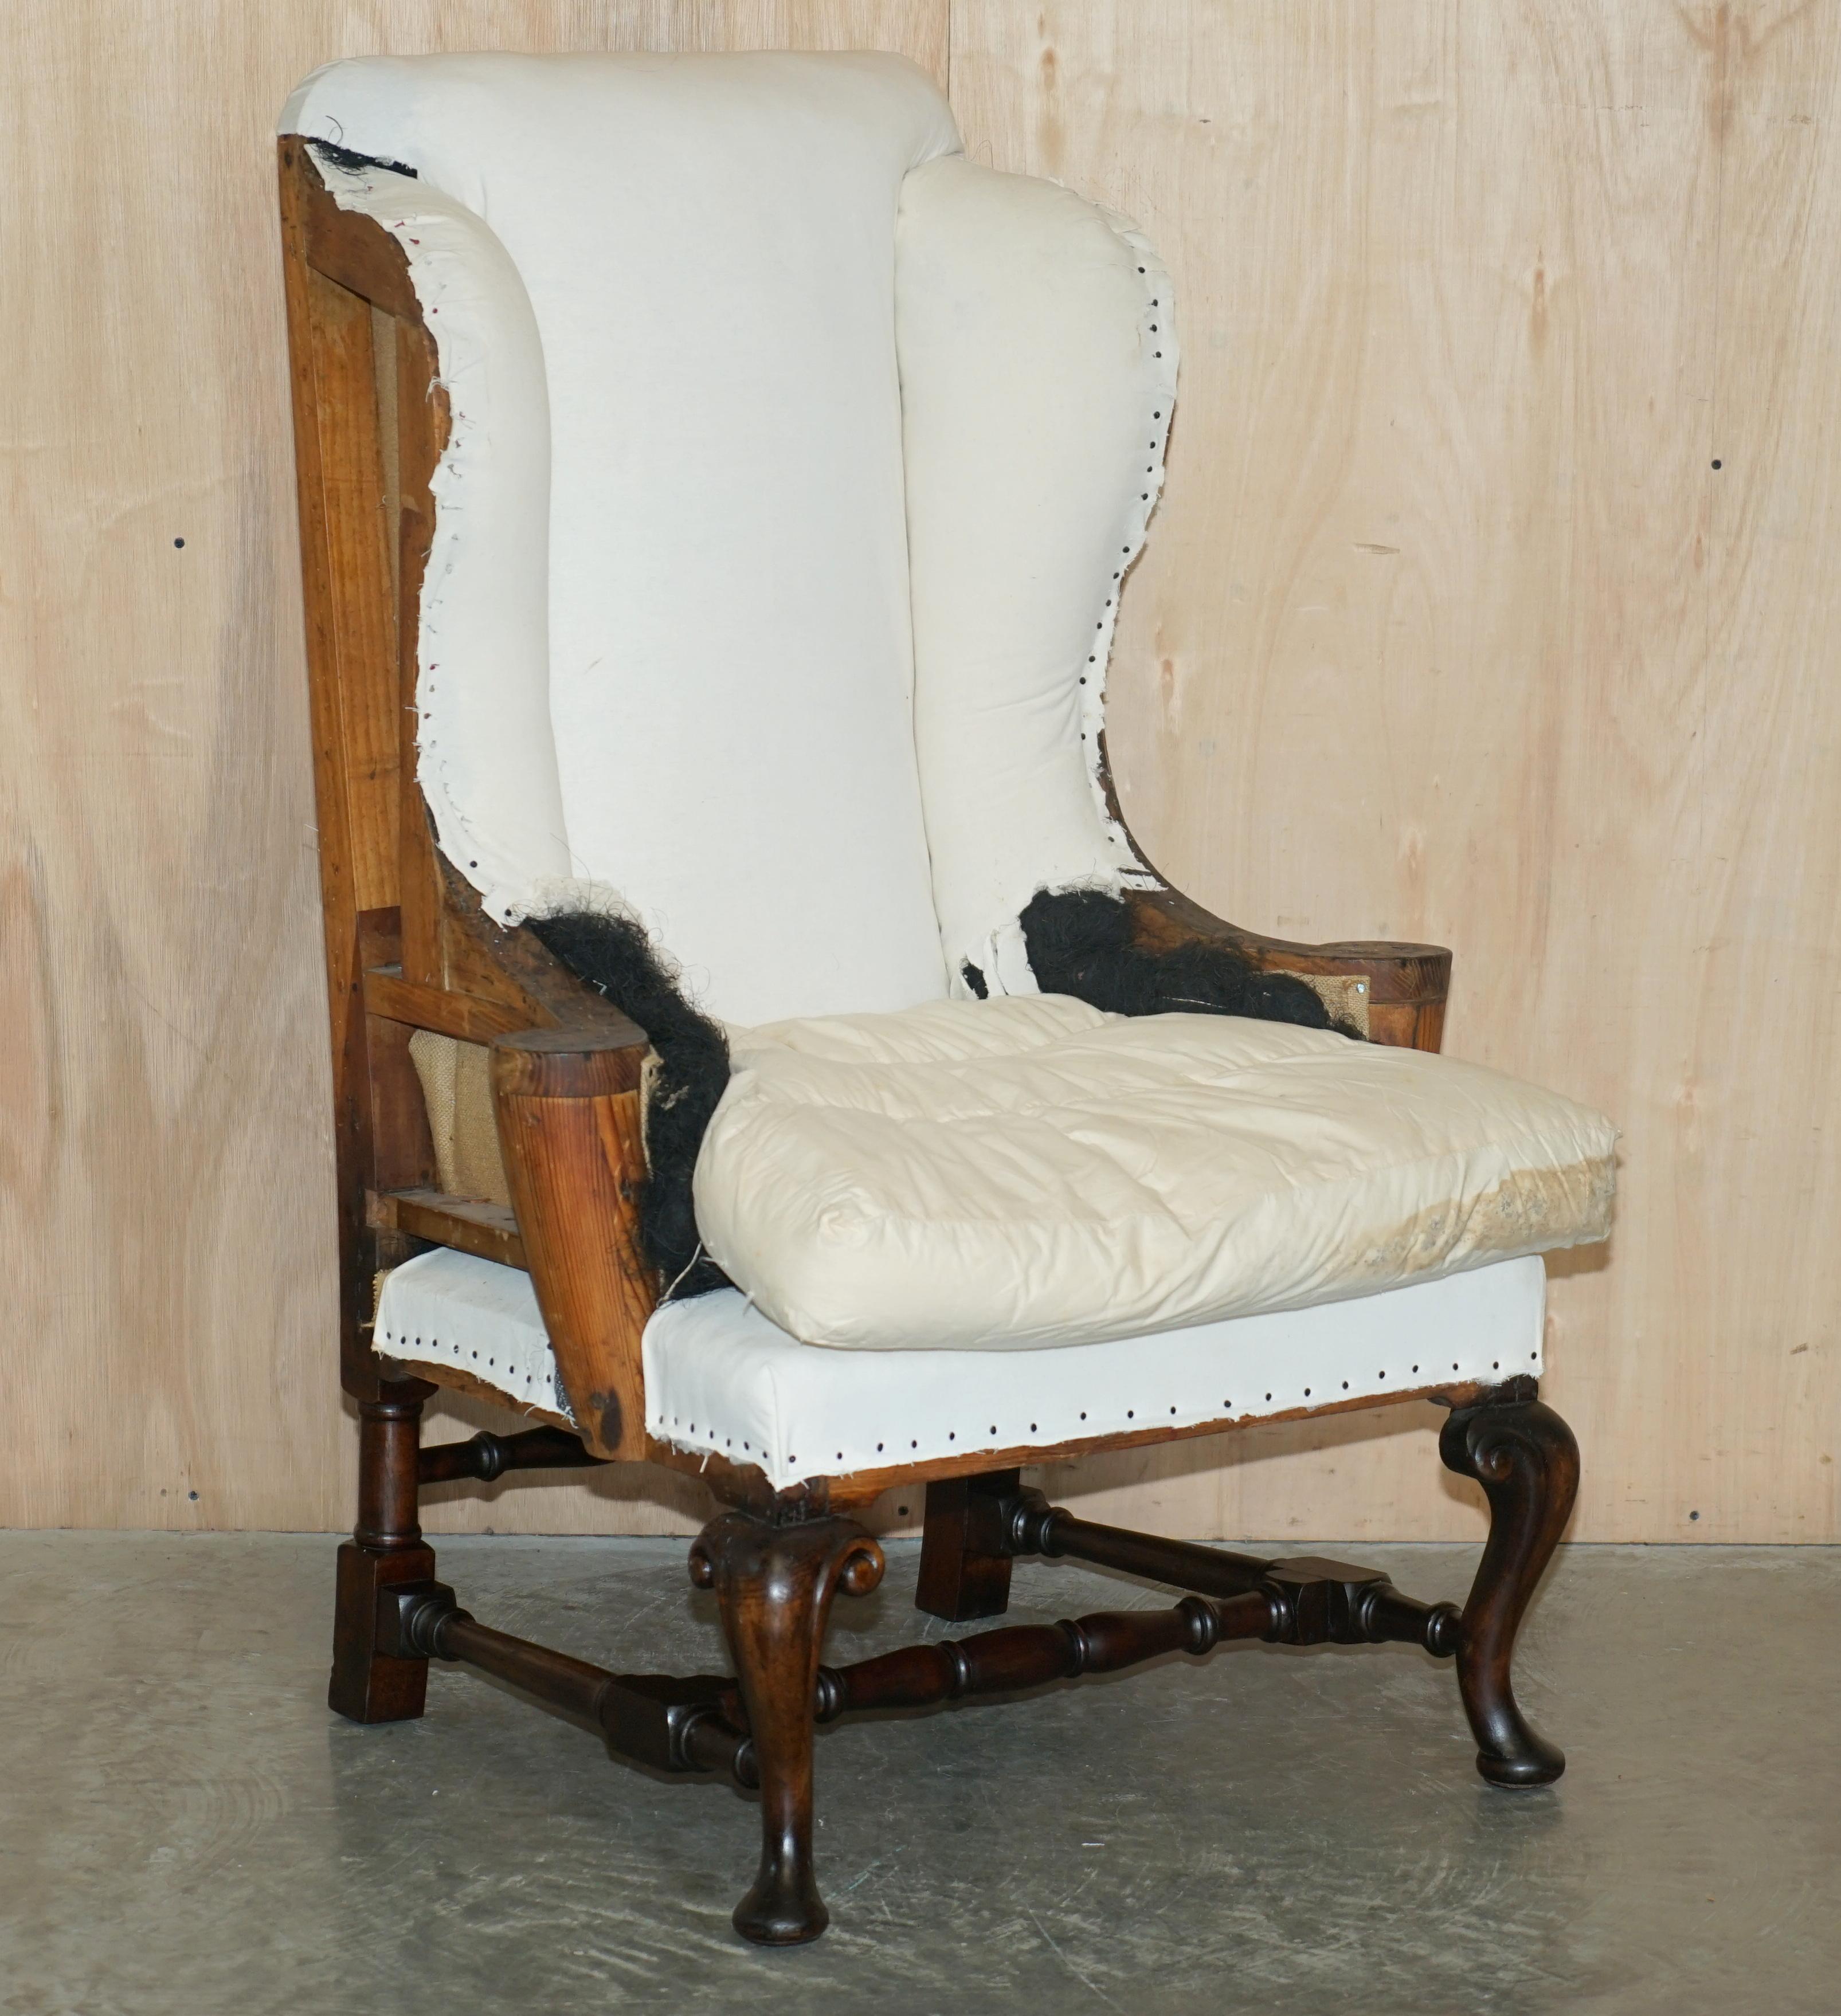 Wir freuen uns, dieses exquisite Paar antiker georgianischer Wingback-Sessel mit kunstvoll geschnitzten Cabriole-Beinen und flachen Armlehnen im William-Morris-Stil um 1820 zum Verkauf anzubieten.

Dieses Paar wurde professionell entkleidet, so